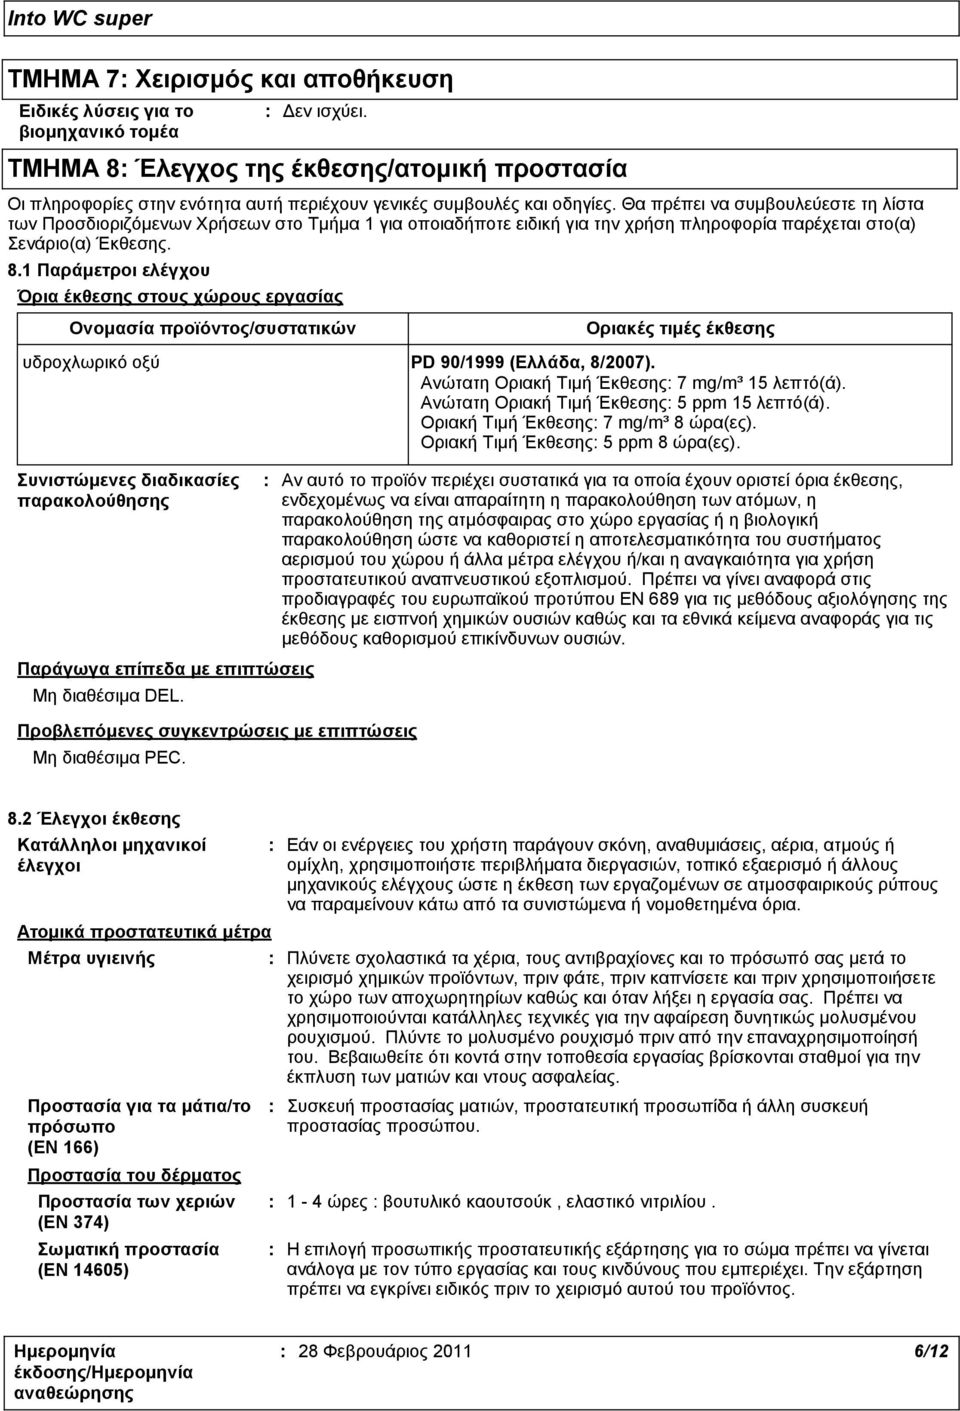 1 Παράμετροι ελέγχου Όρια έκθεσης στους χώρους εργασίας Ονομασία προϊόντος/συστατικών Οριακές τιμές έκθεσης υδροχλωρικό οξύ PD 90/1999 (Ελλάδα, 8/2007).